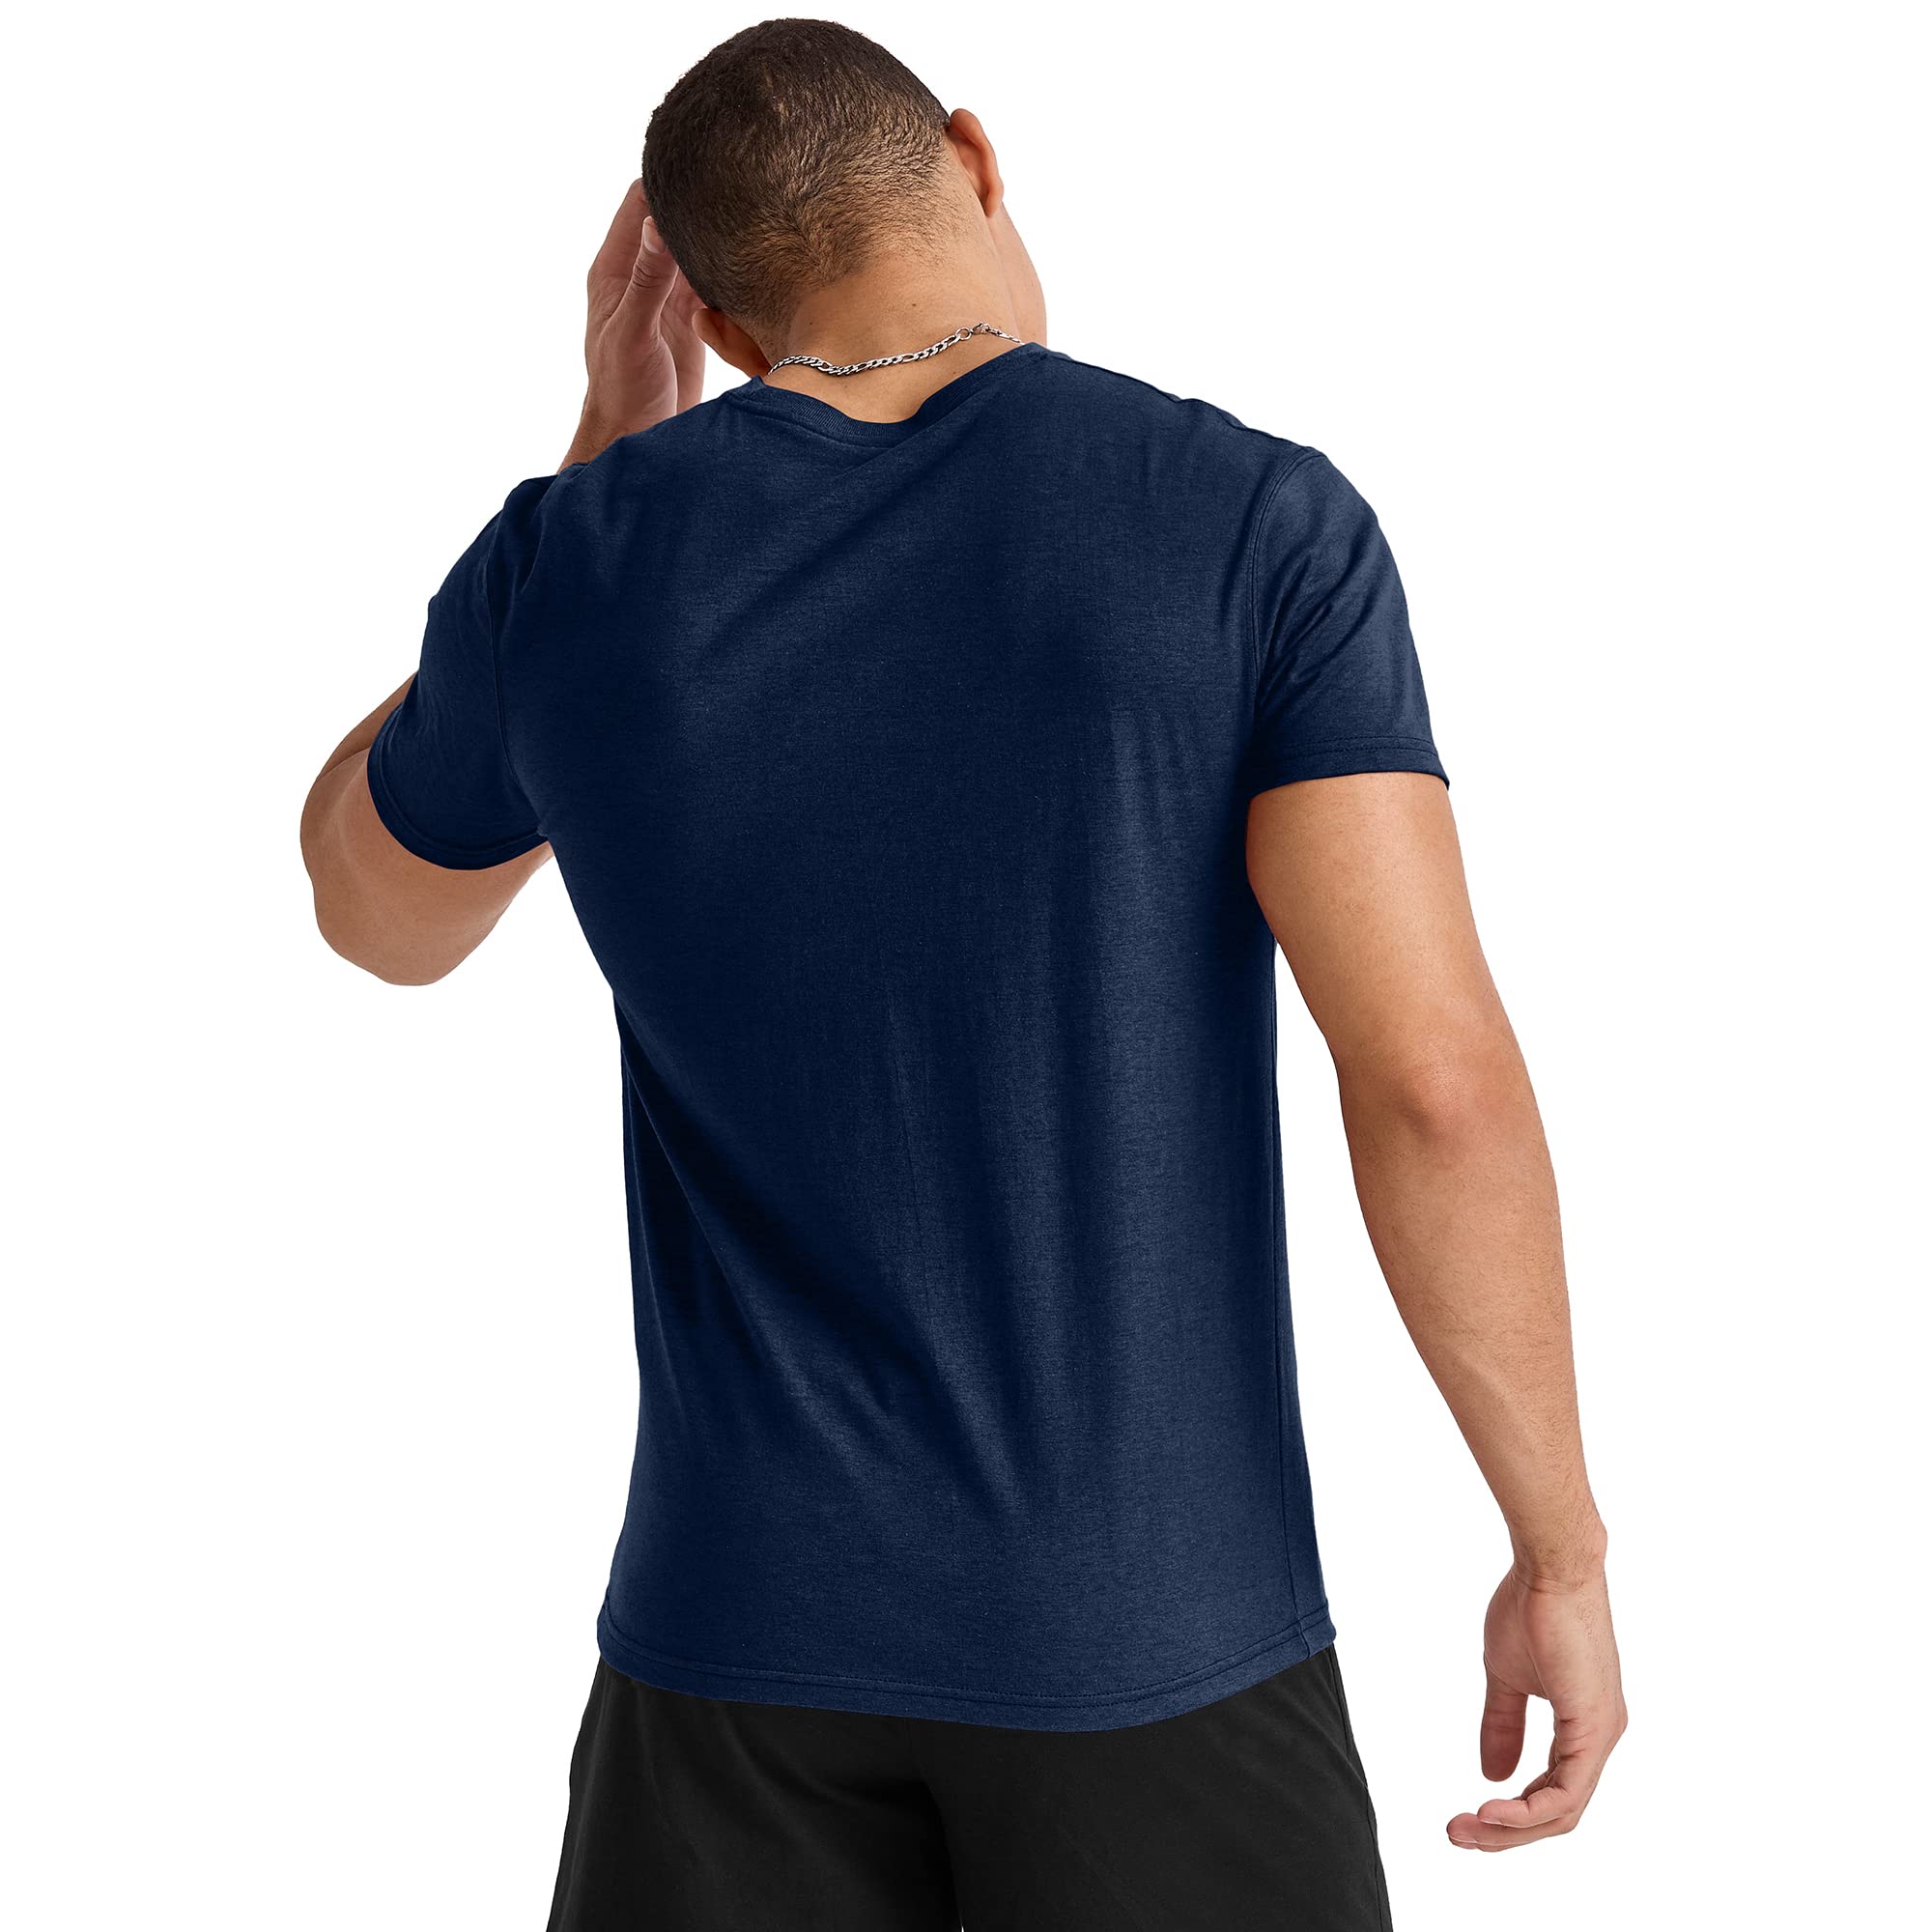 Hanes Men's Originals Lightweight Tall T-Shirt, Tri-Blend Tee, Big & Tall Sizes